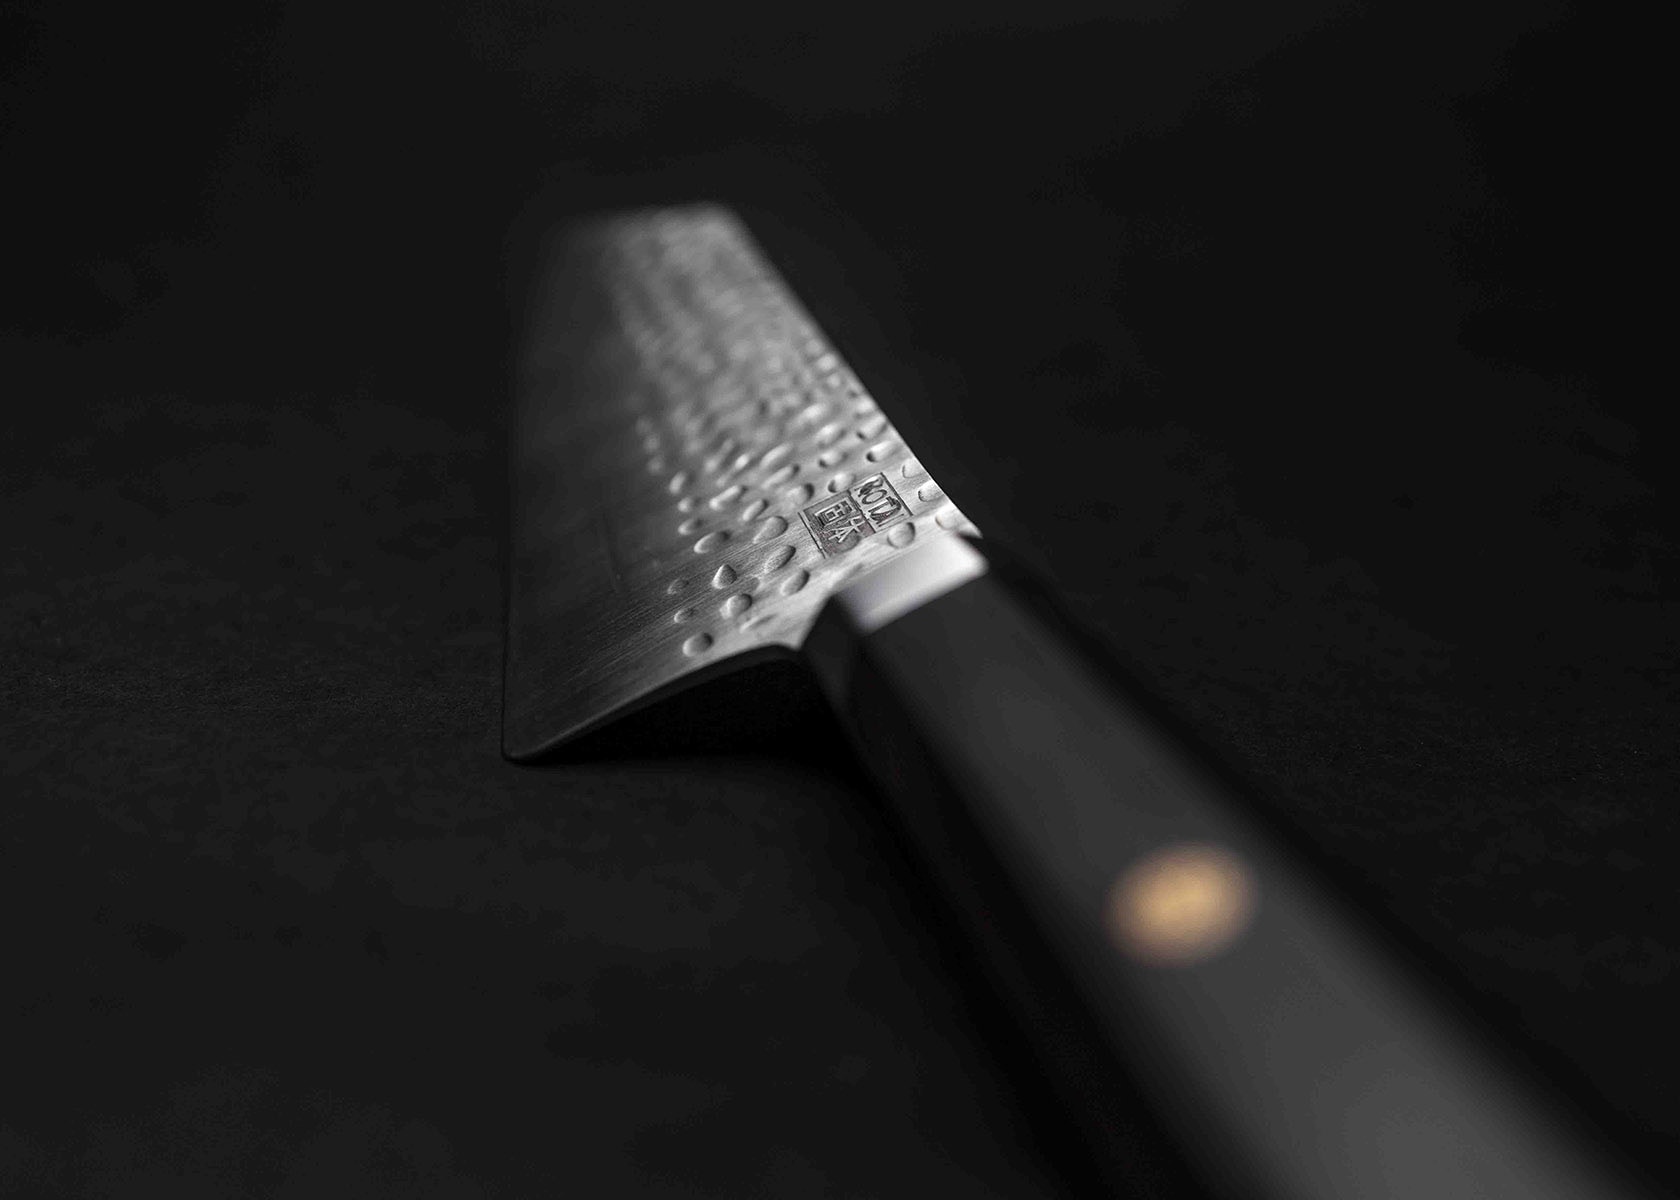 Couteau Santoku Bunka KOTAI - Type couteau de Chef japonais - Lame 17 cm